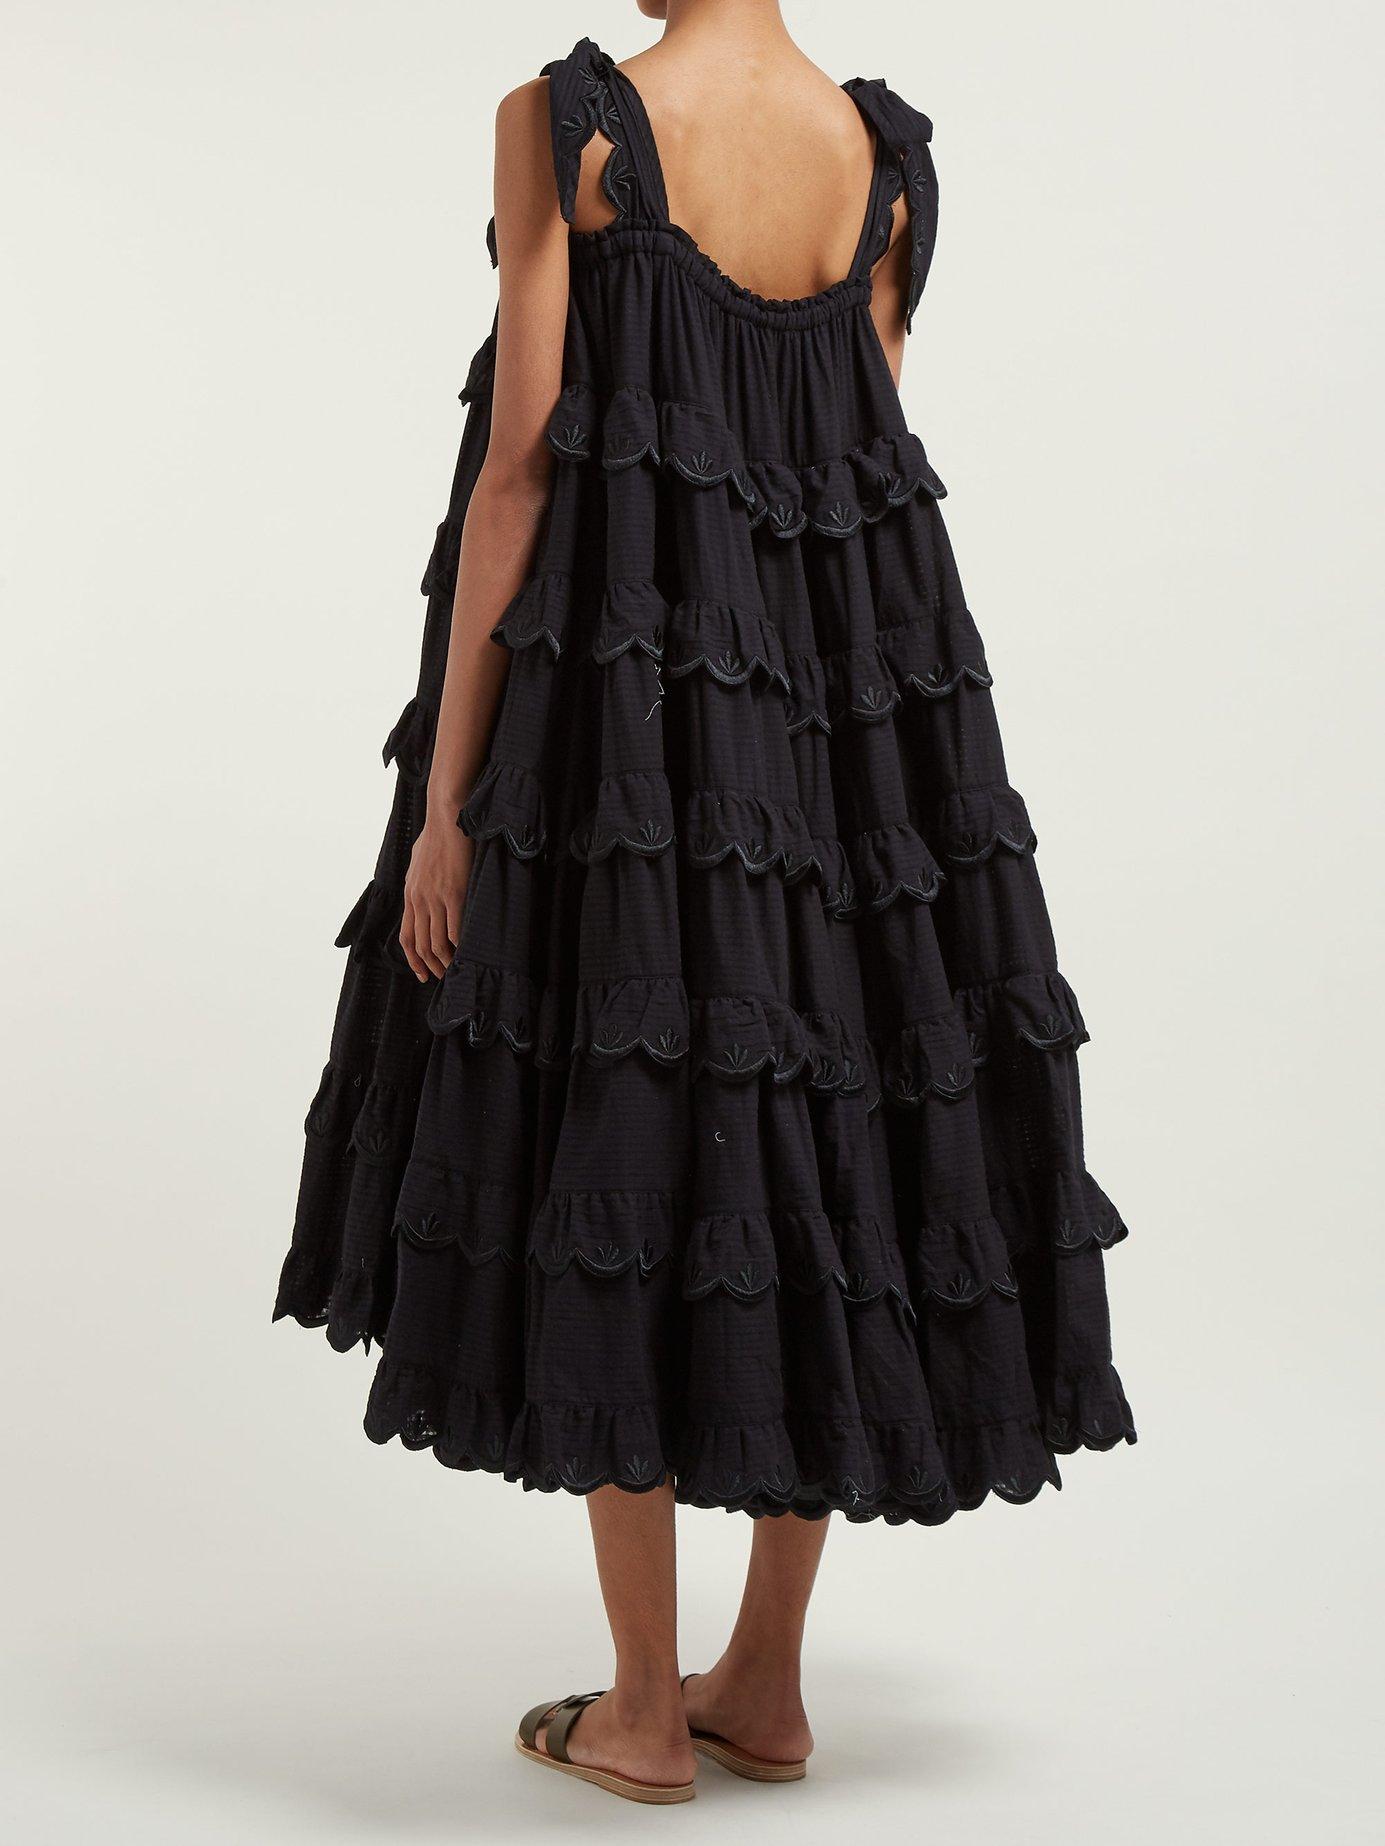 Innika Choo Iva Biigdres Tiered Cotton Midi Dress in Black - Lyst